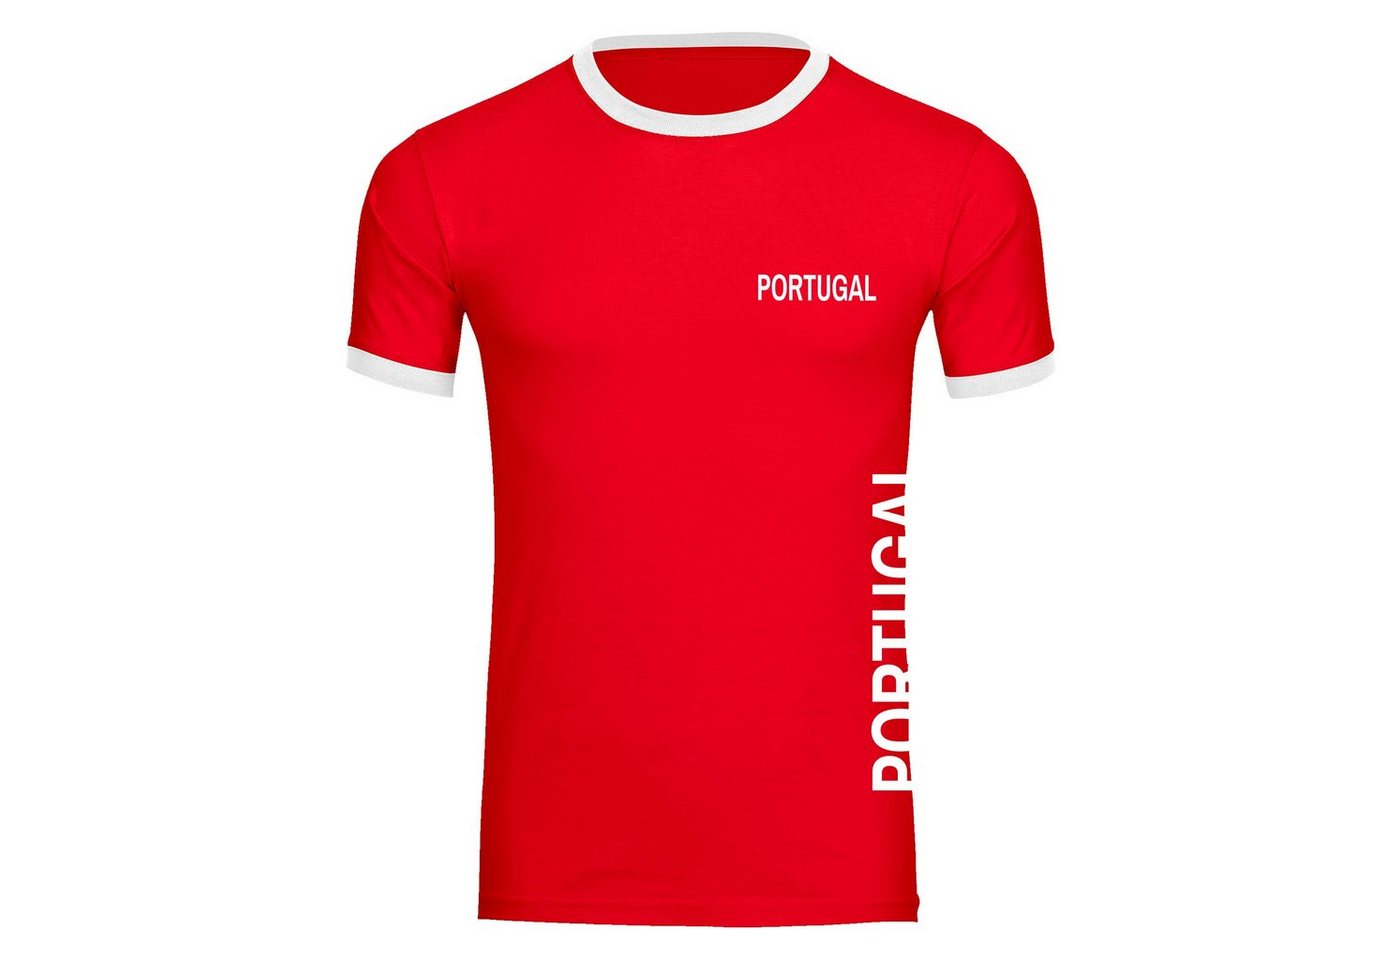 multifanshop T-Shirt Kontrast Portugal - Brust & Seite - Männer von multifanshop